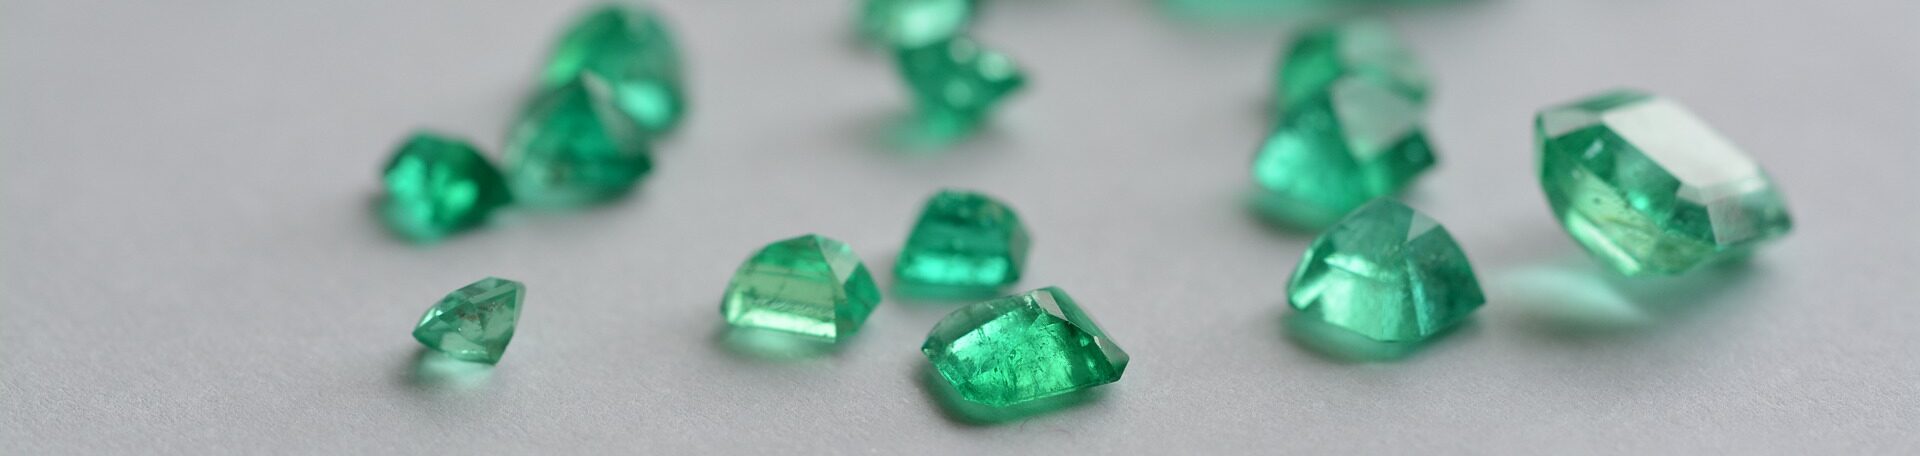 緑柱石 ベリル 宝石 超高級な輝石も実はこの鉱物 Archaiqueの彫金 宝石備忘録